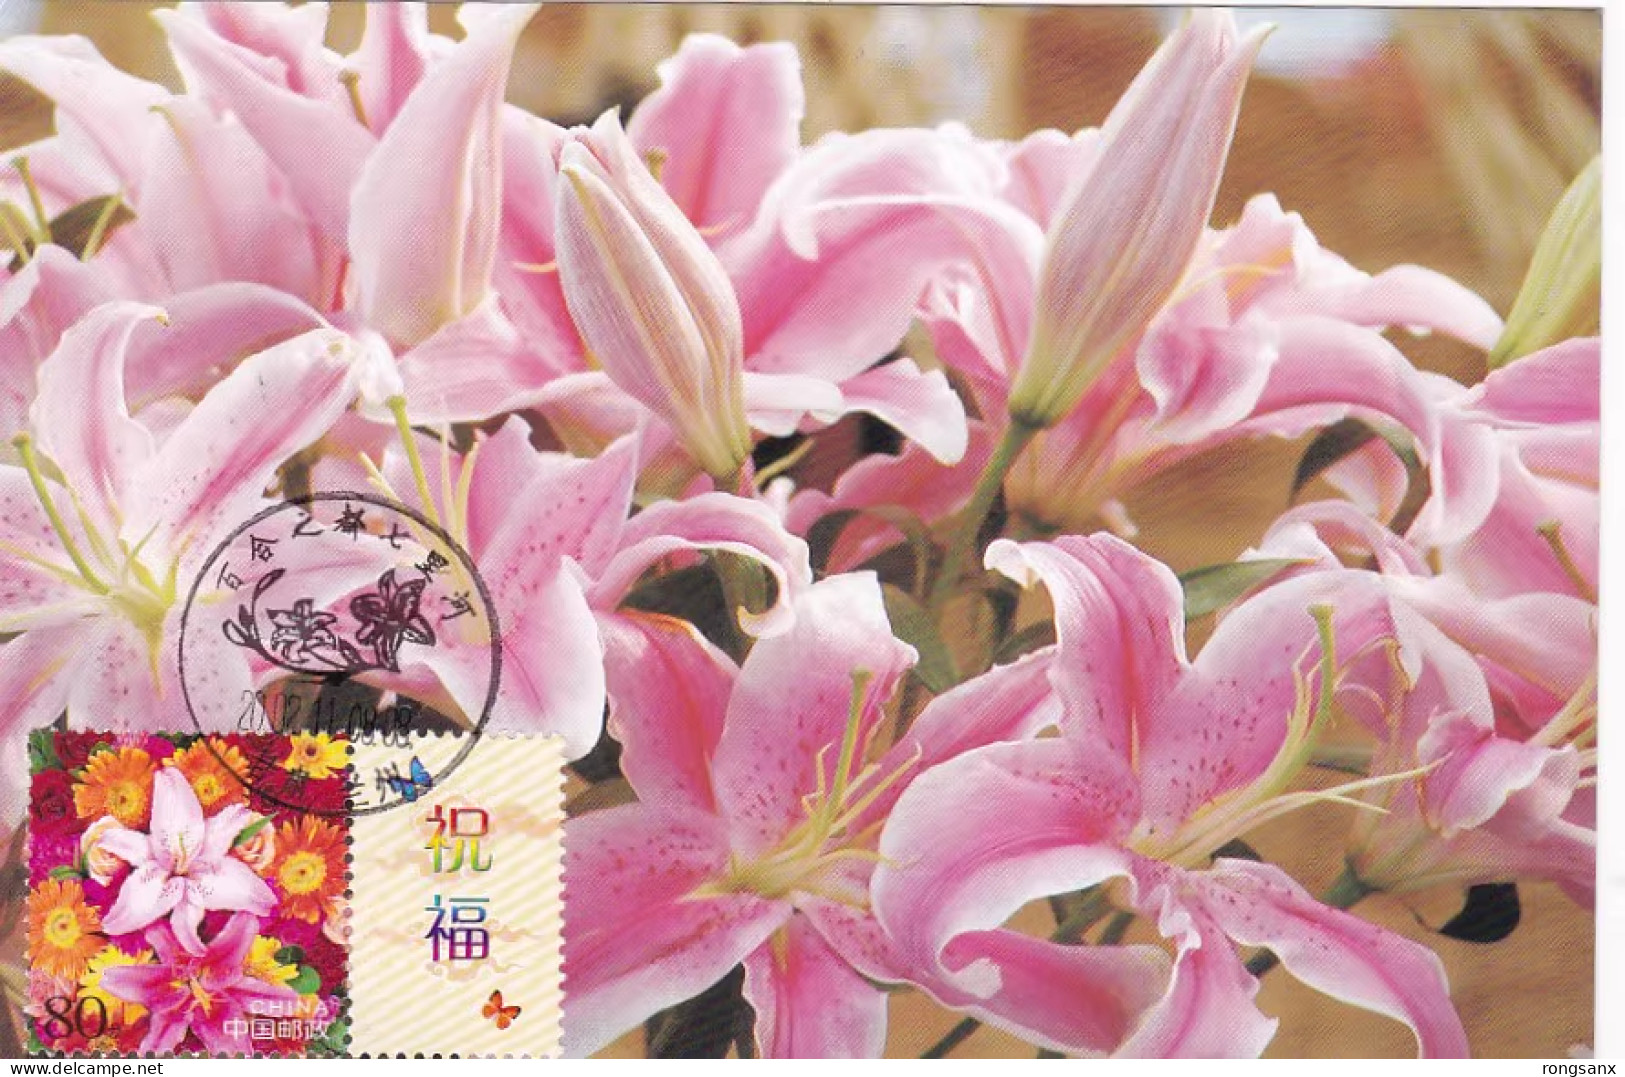 2002 CHINA G-2 GREETING STAMP FLOWER LOCAL MC-S VIEW PMK - Maximumkaarten